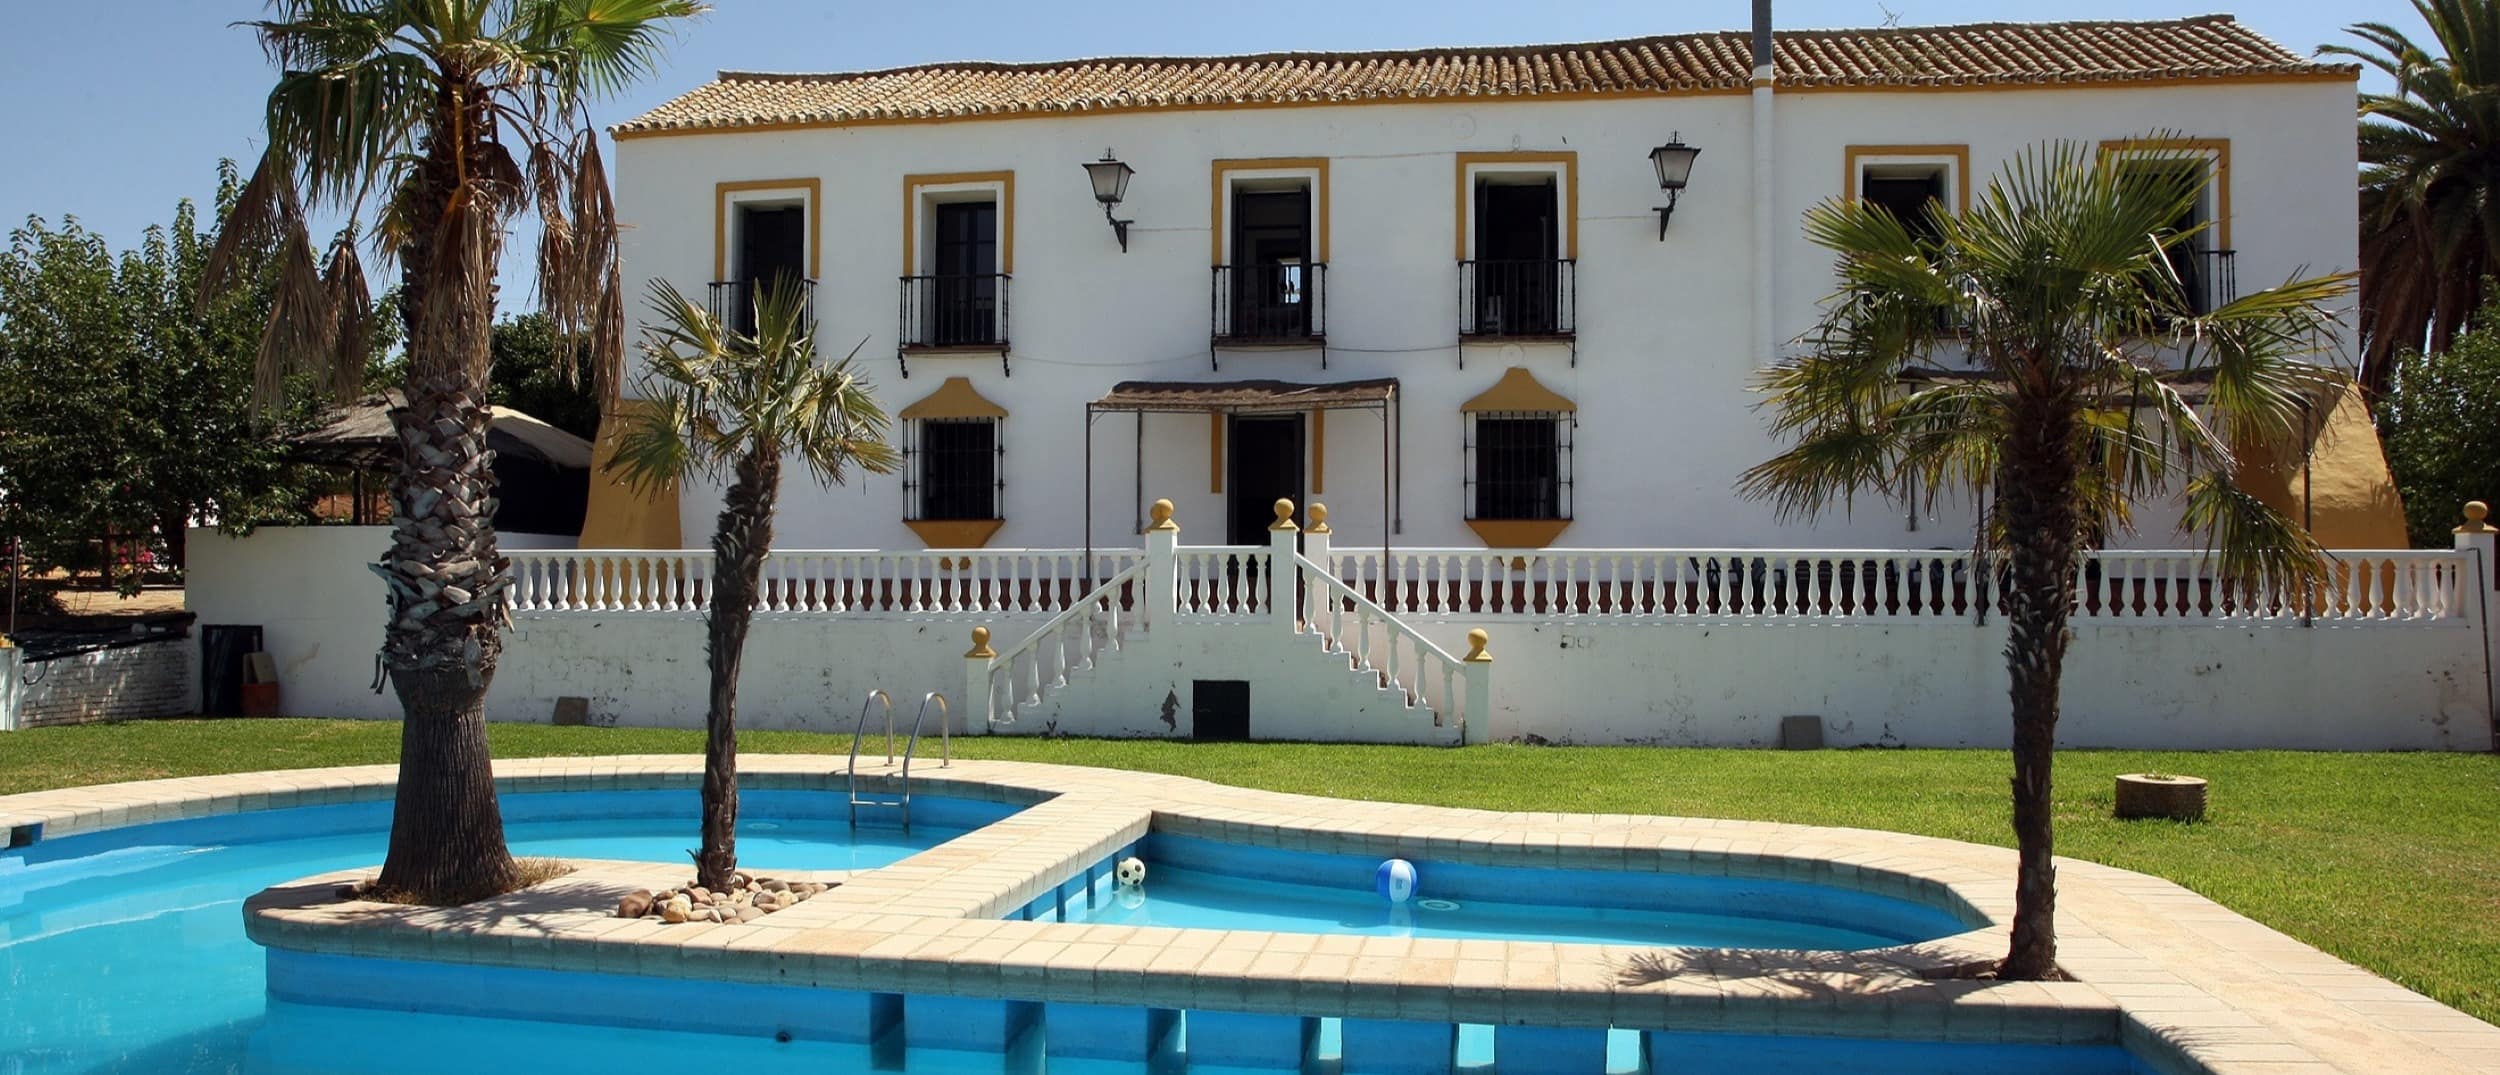 Cuatro destinos para alquilar una casa rural en Sevilla